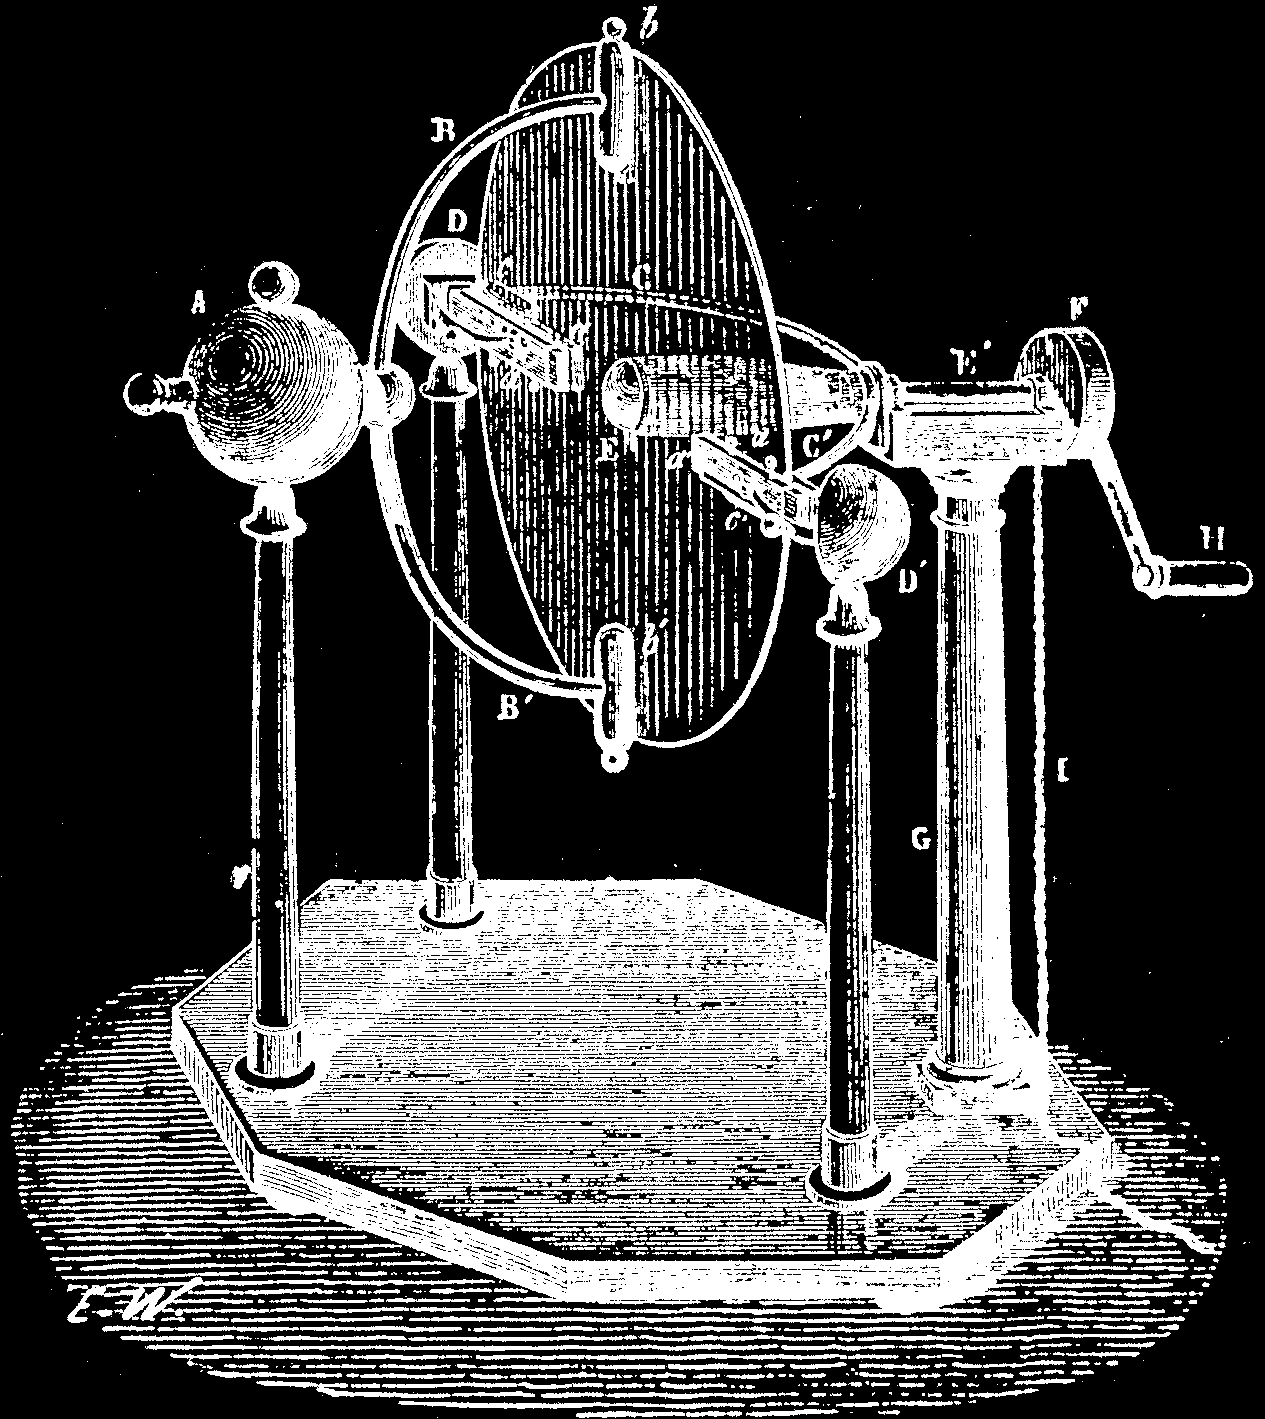 En 1768, l'opticien anglais Ramsden transforme complètement et définitivement l'apparence des machines électrostatiques.